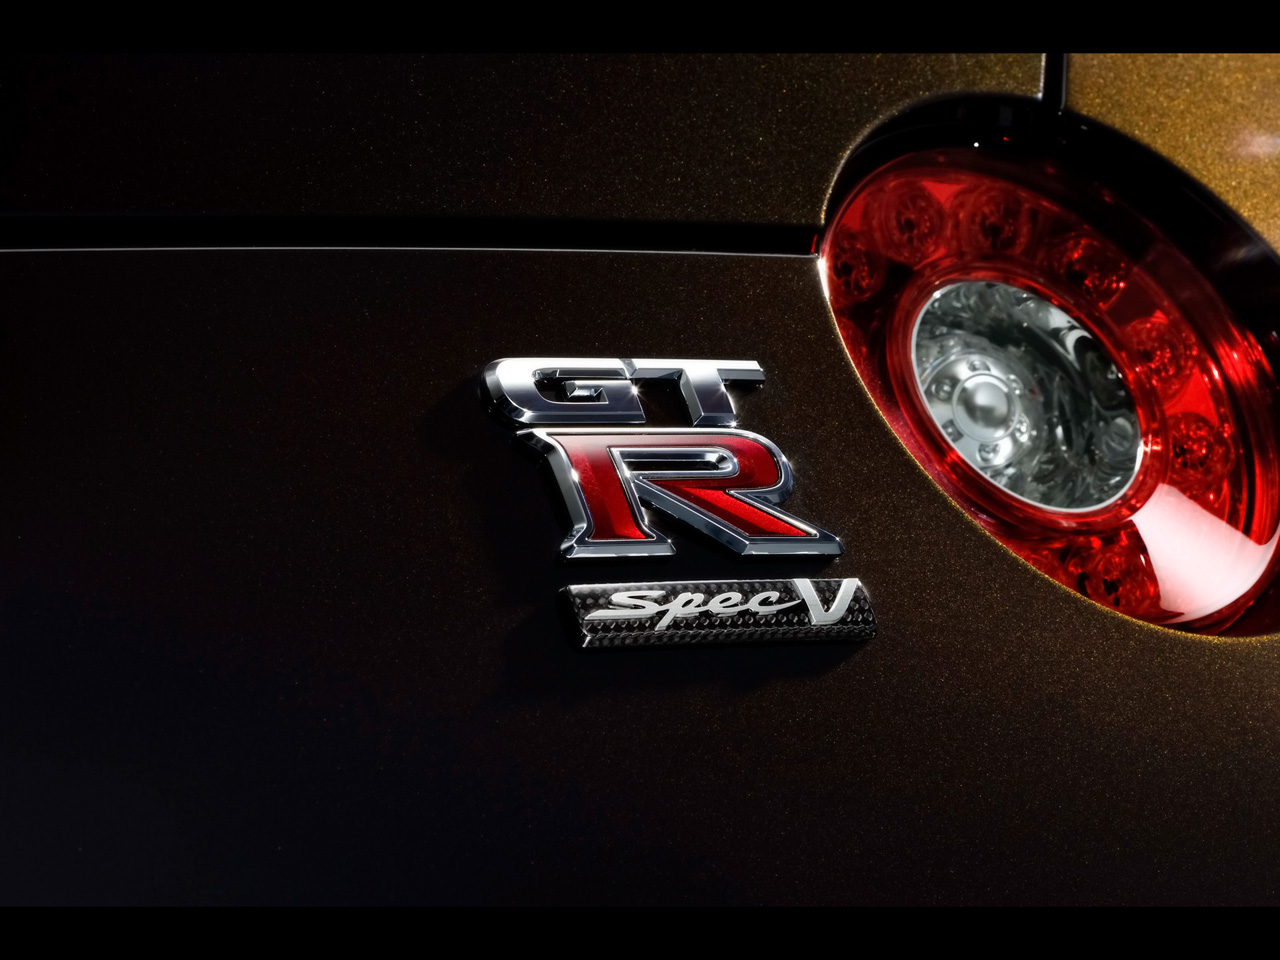 2009 Nissan GT-R SpecV